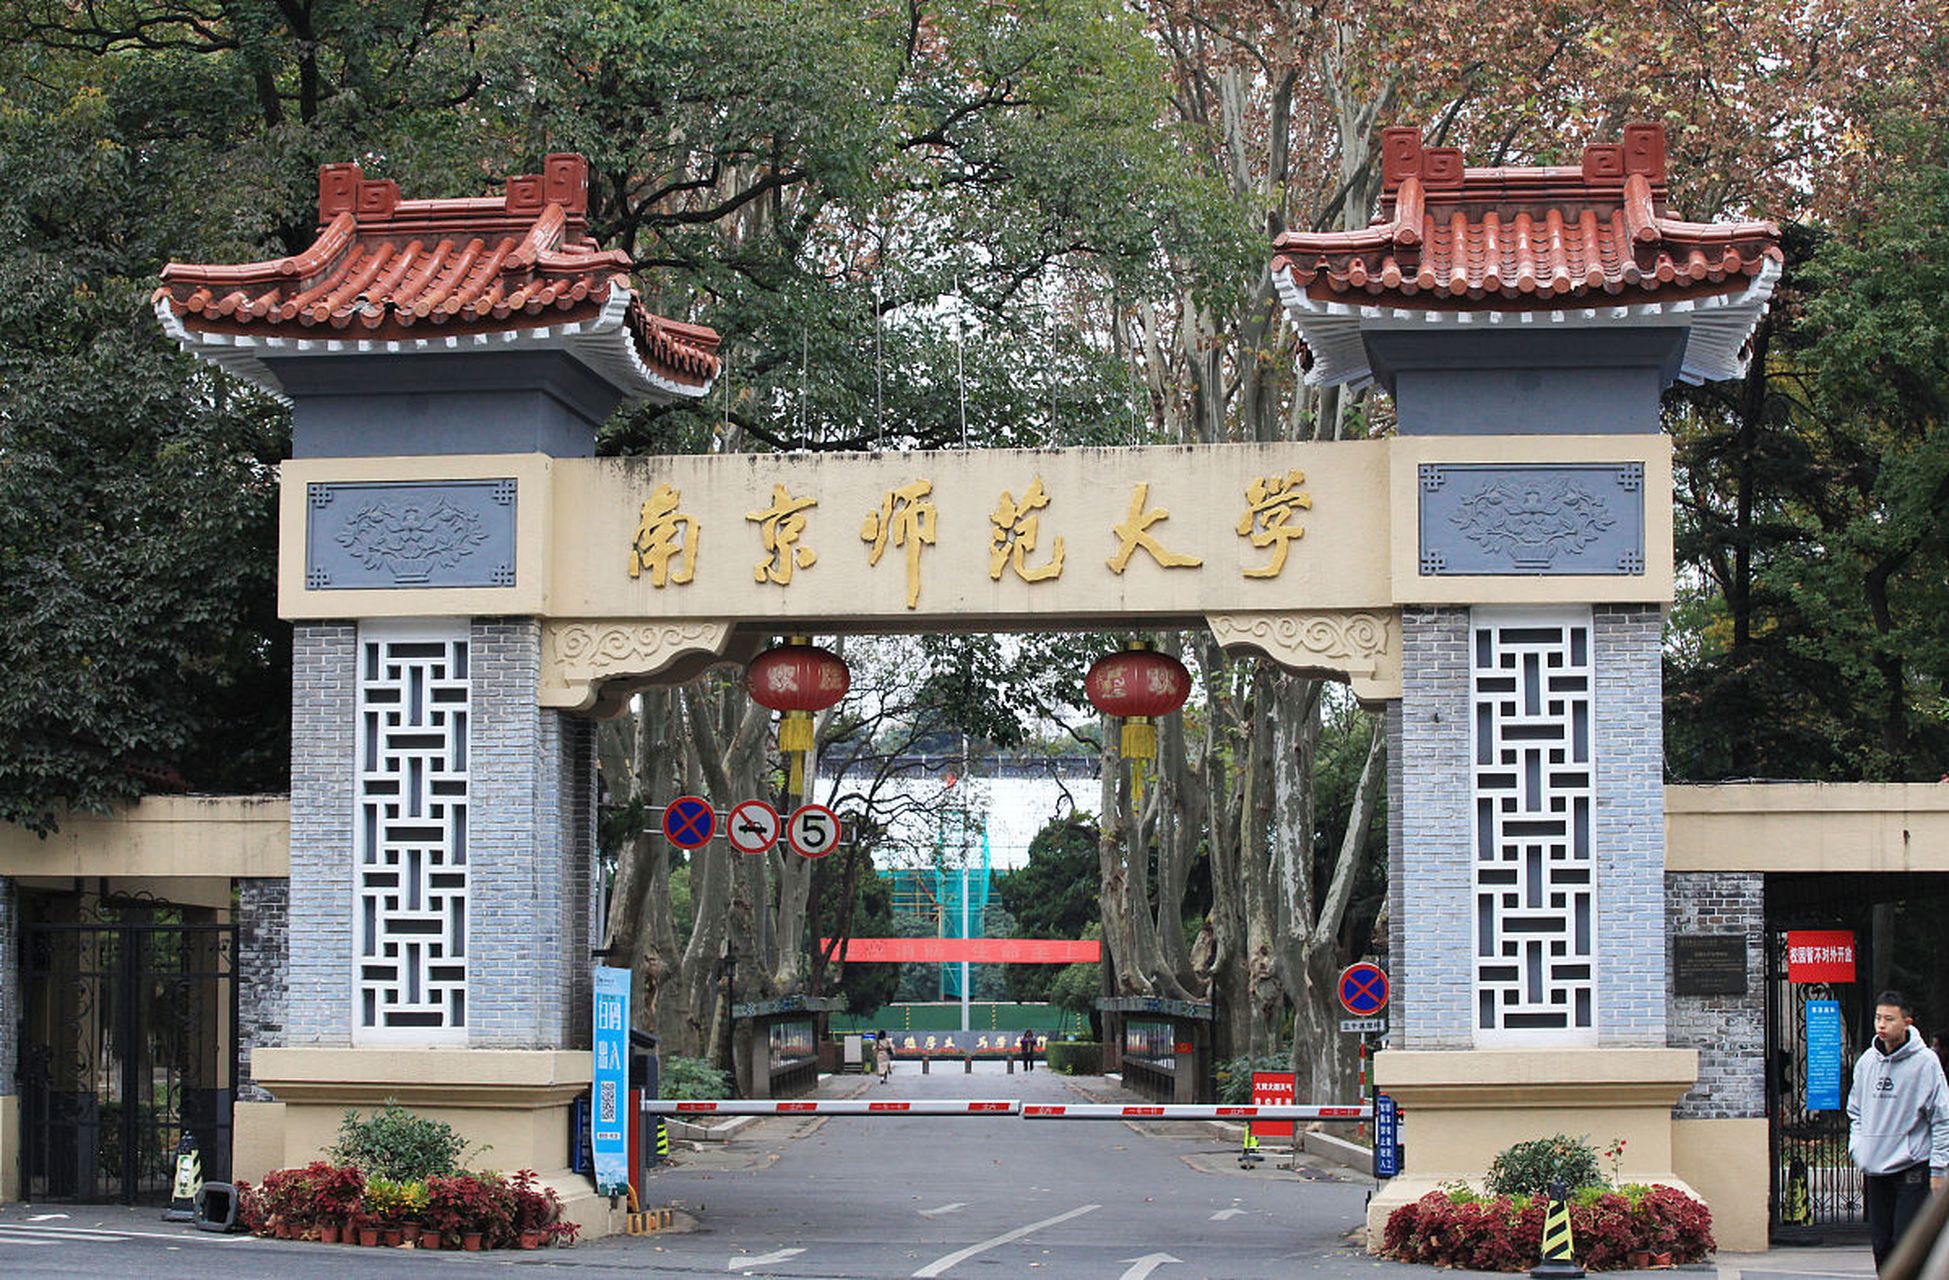 南京师范大学(nanjing normal university,简称南师)是中国江苏省